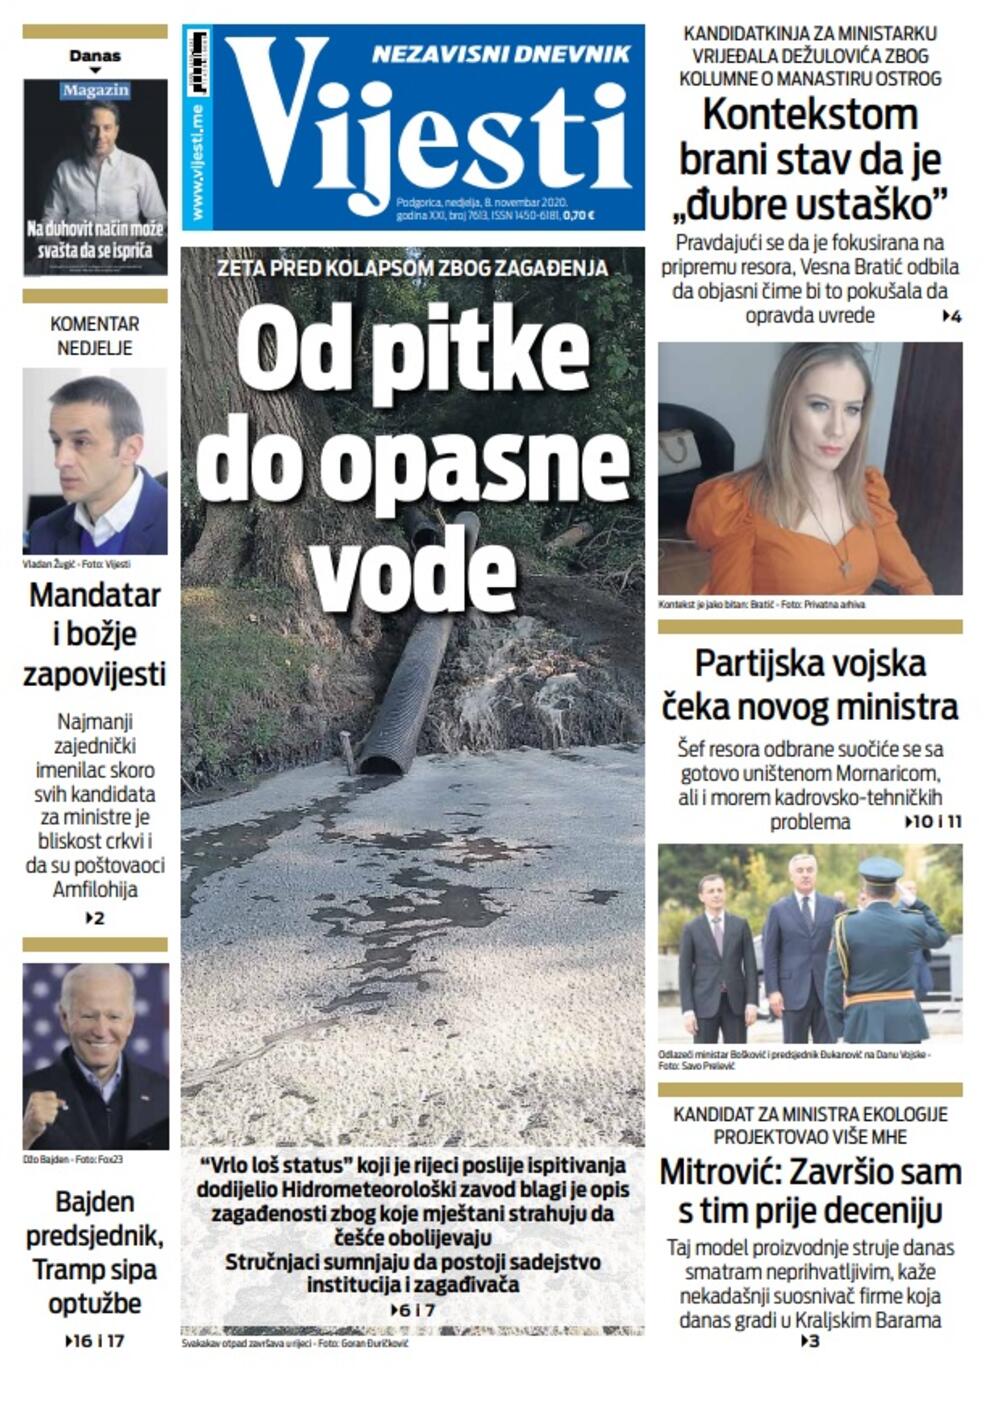 Naslovna strana "Vijesti" za nedjelju 8. novembar 2020. godine, Foto: Vijesti